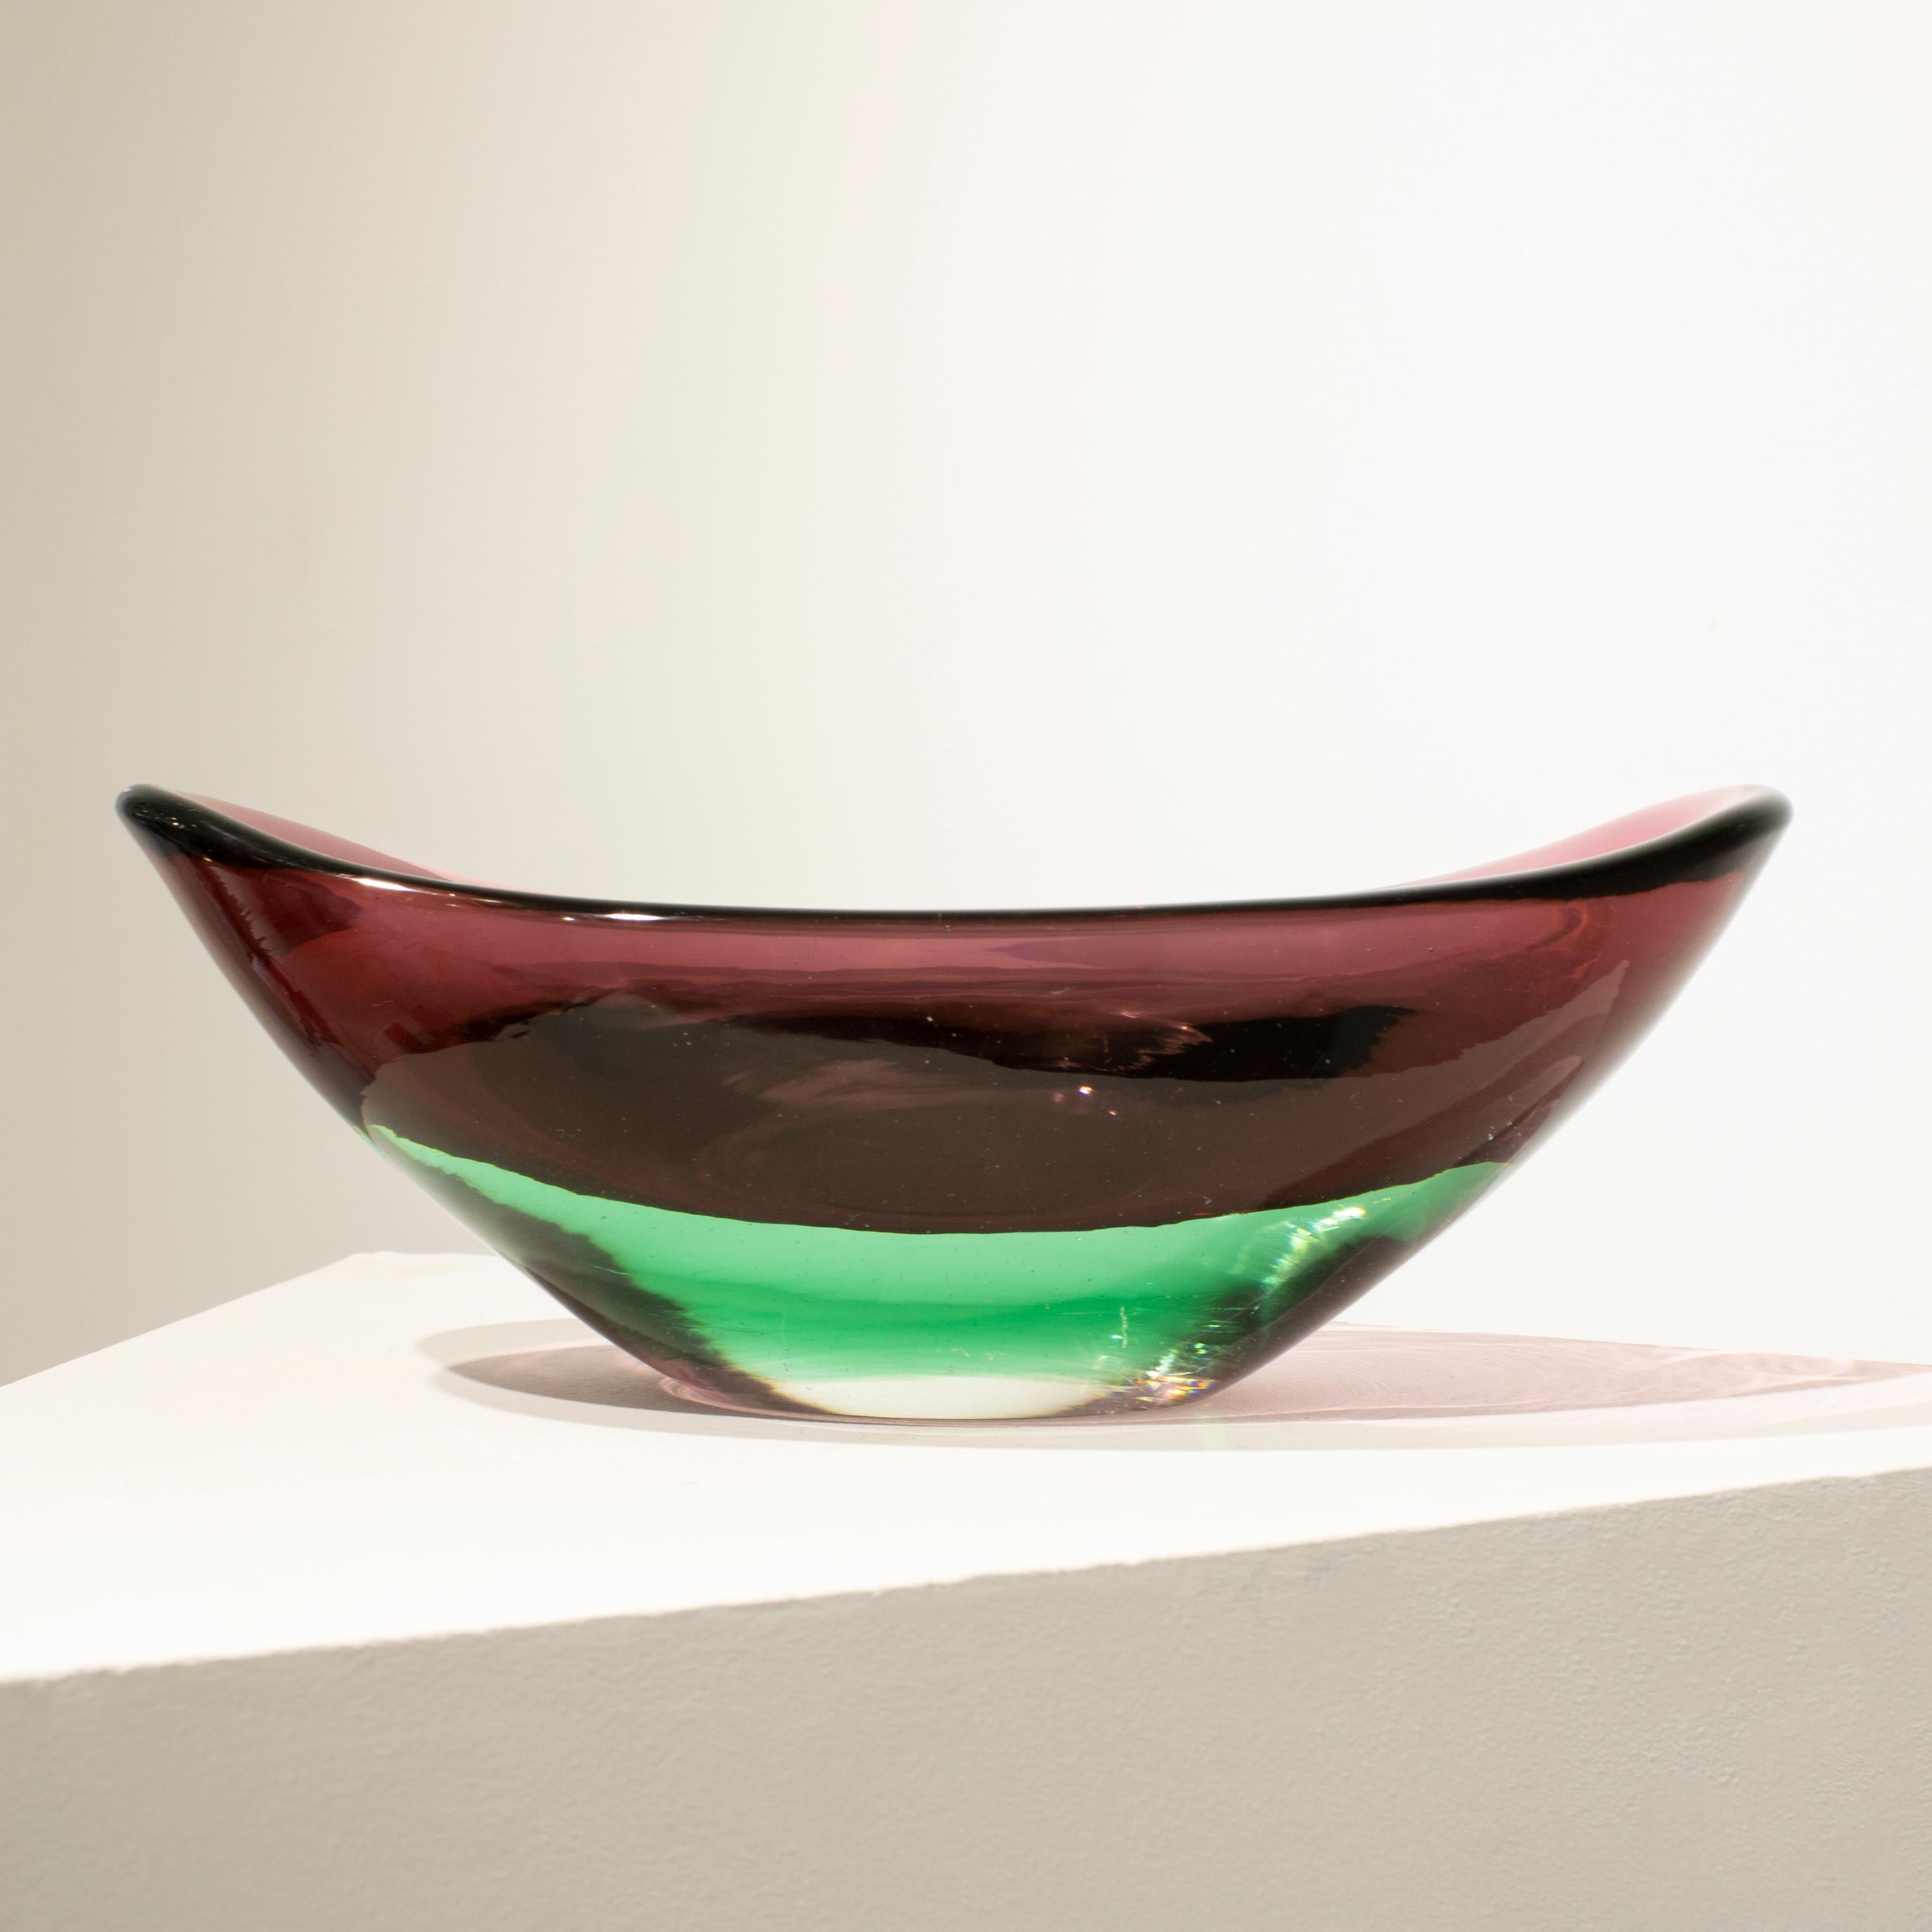 Italienisches Center Piece, entworfen in den 1970er Jahren, handgefertigt aus Murano-Glas mit geschwungener Form, in Rosa und Grün.